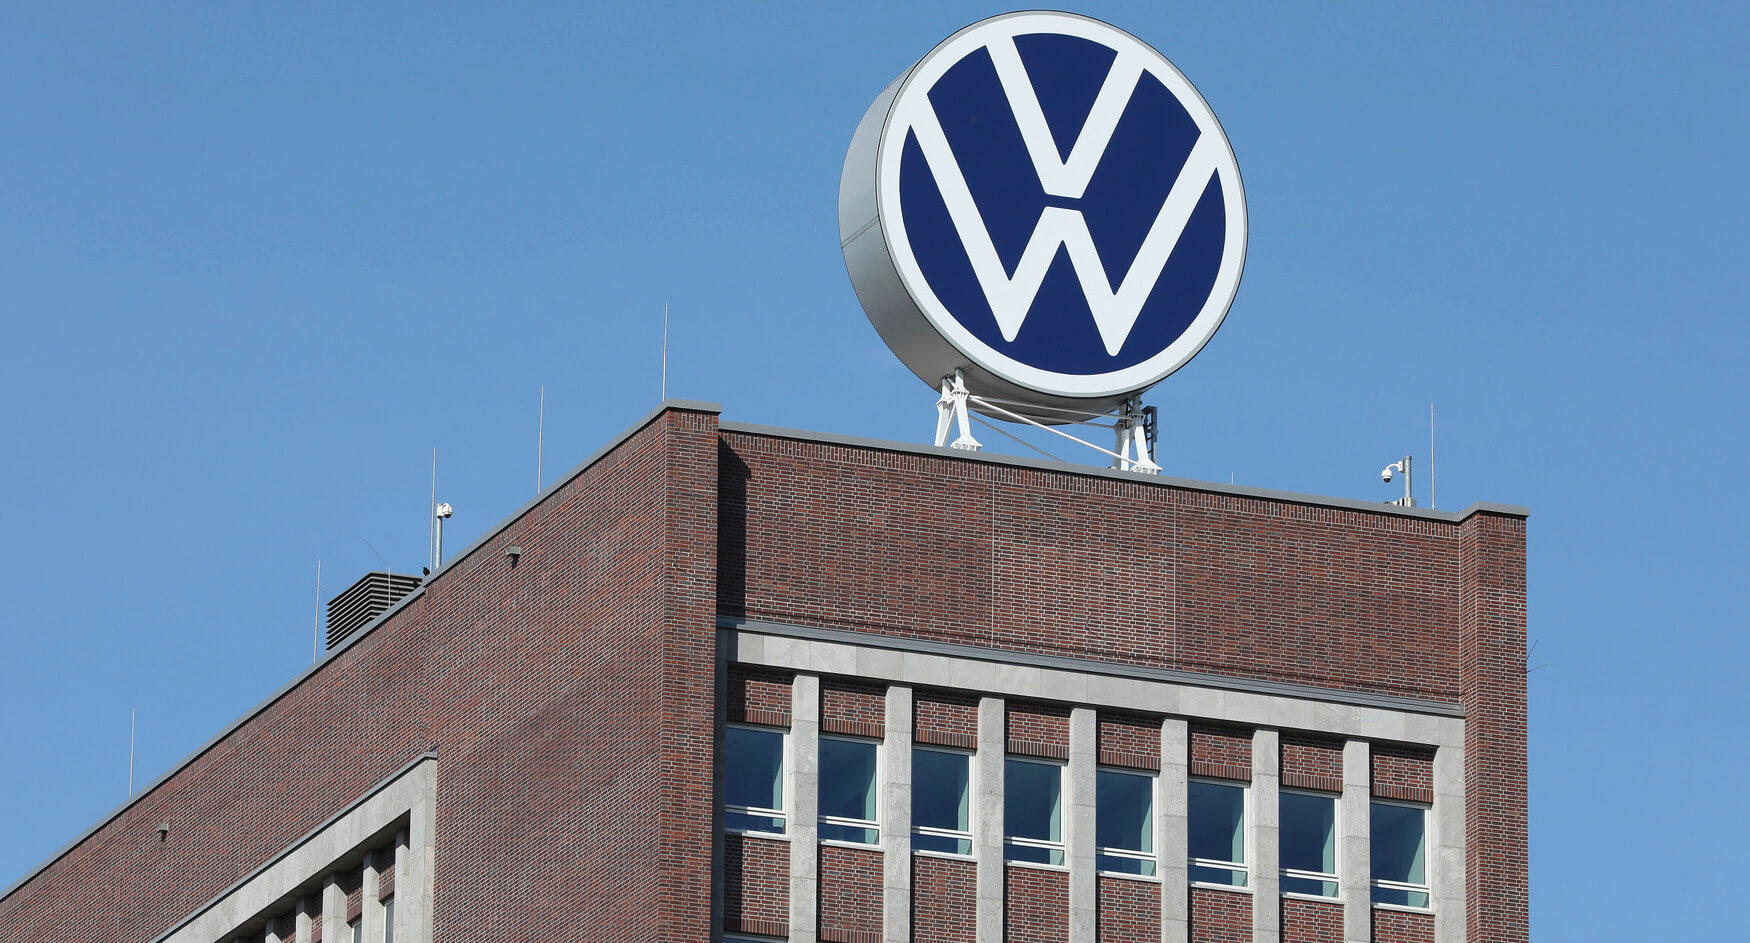 La Volkswagen apporta cambiamenti ai turni nello stabilimento di veicoli elettrici di Zwickau